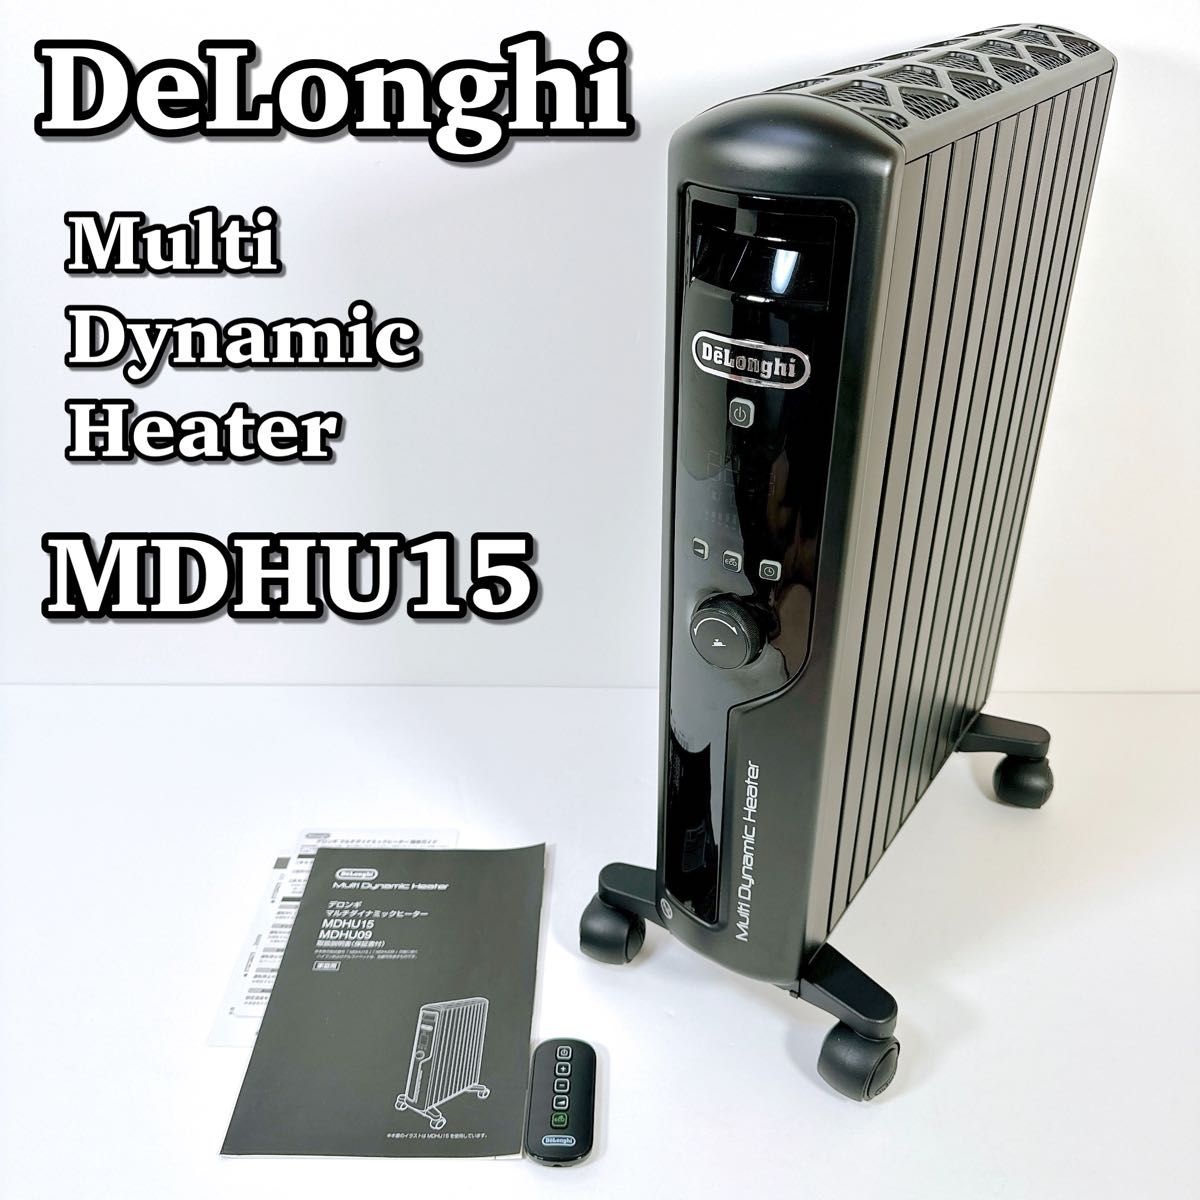 1459 美品 DeLonghi デロンギ MDHU15-PB マルチダイナミックヒーター